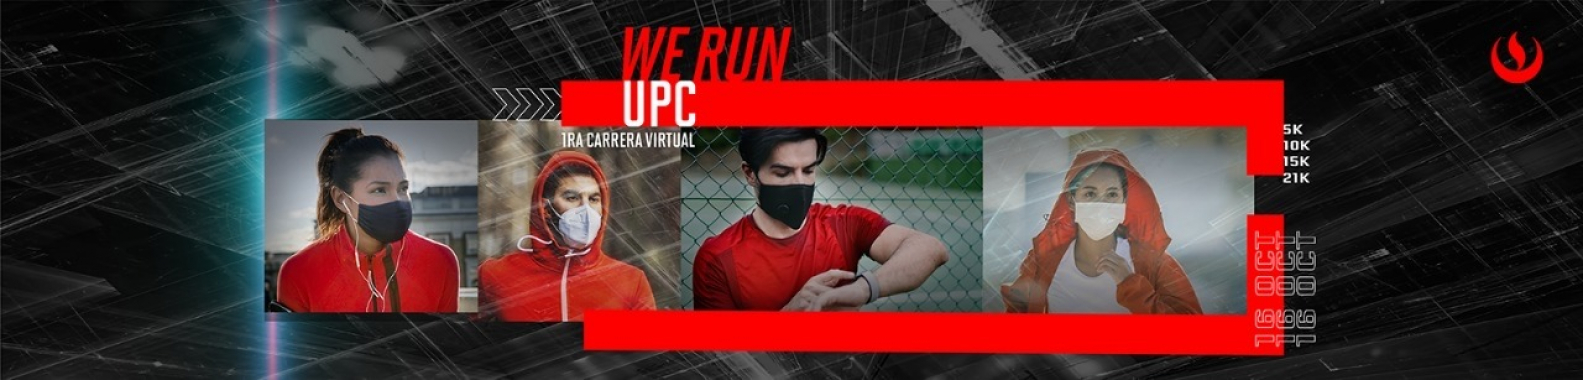 We Run UPC